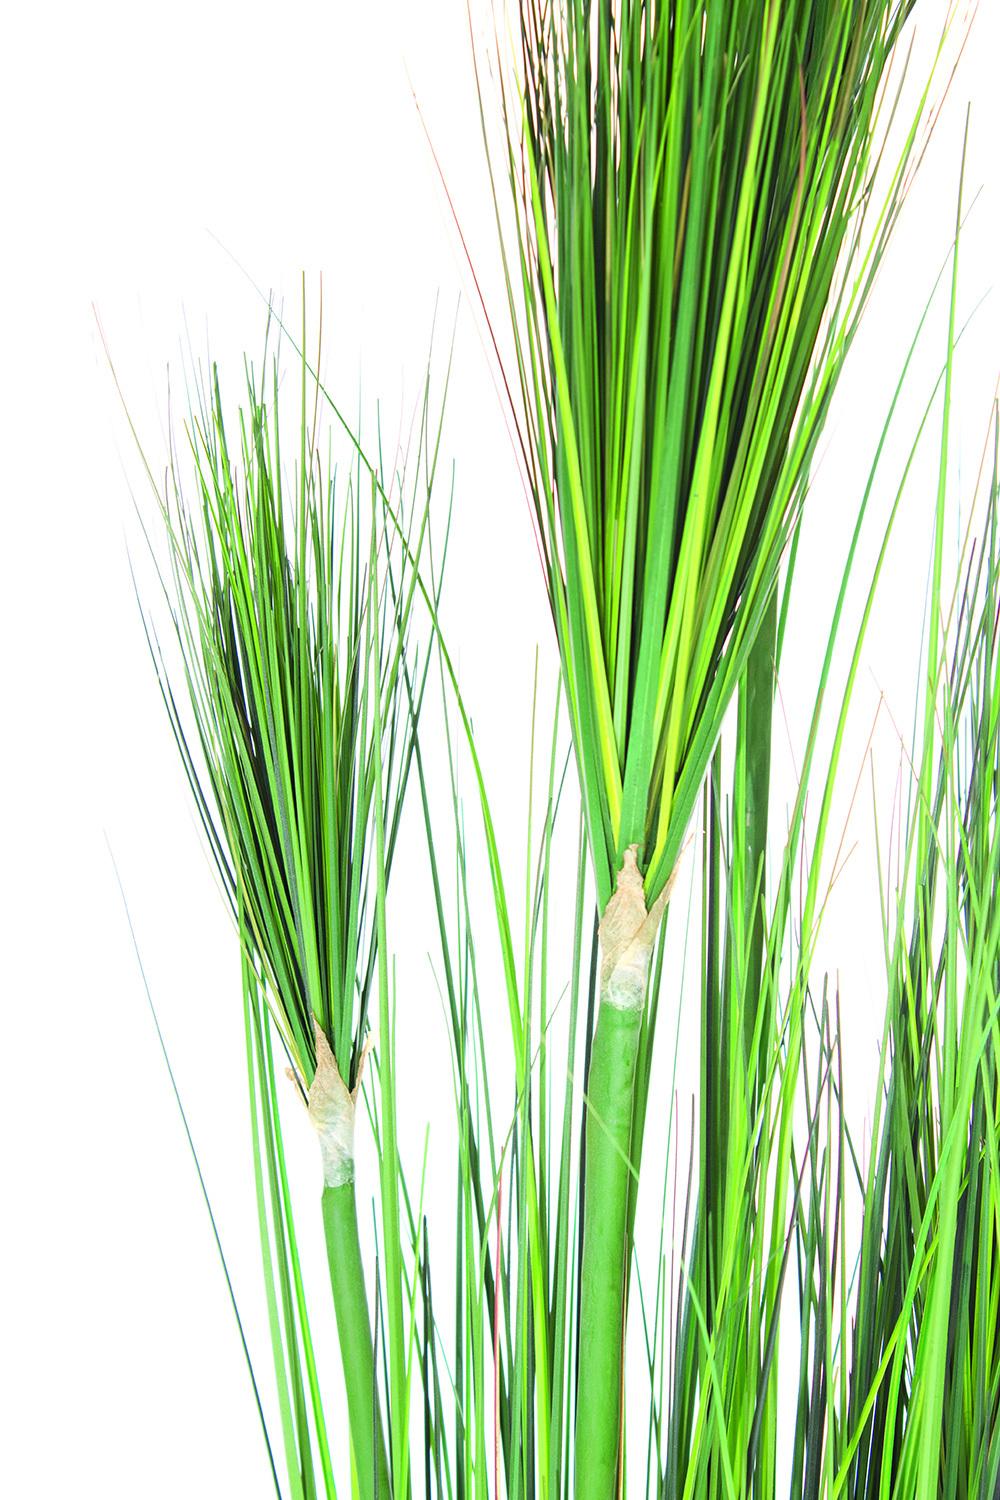 ONION GRASS 152 cm, green